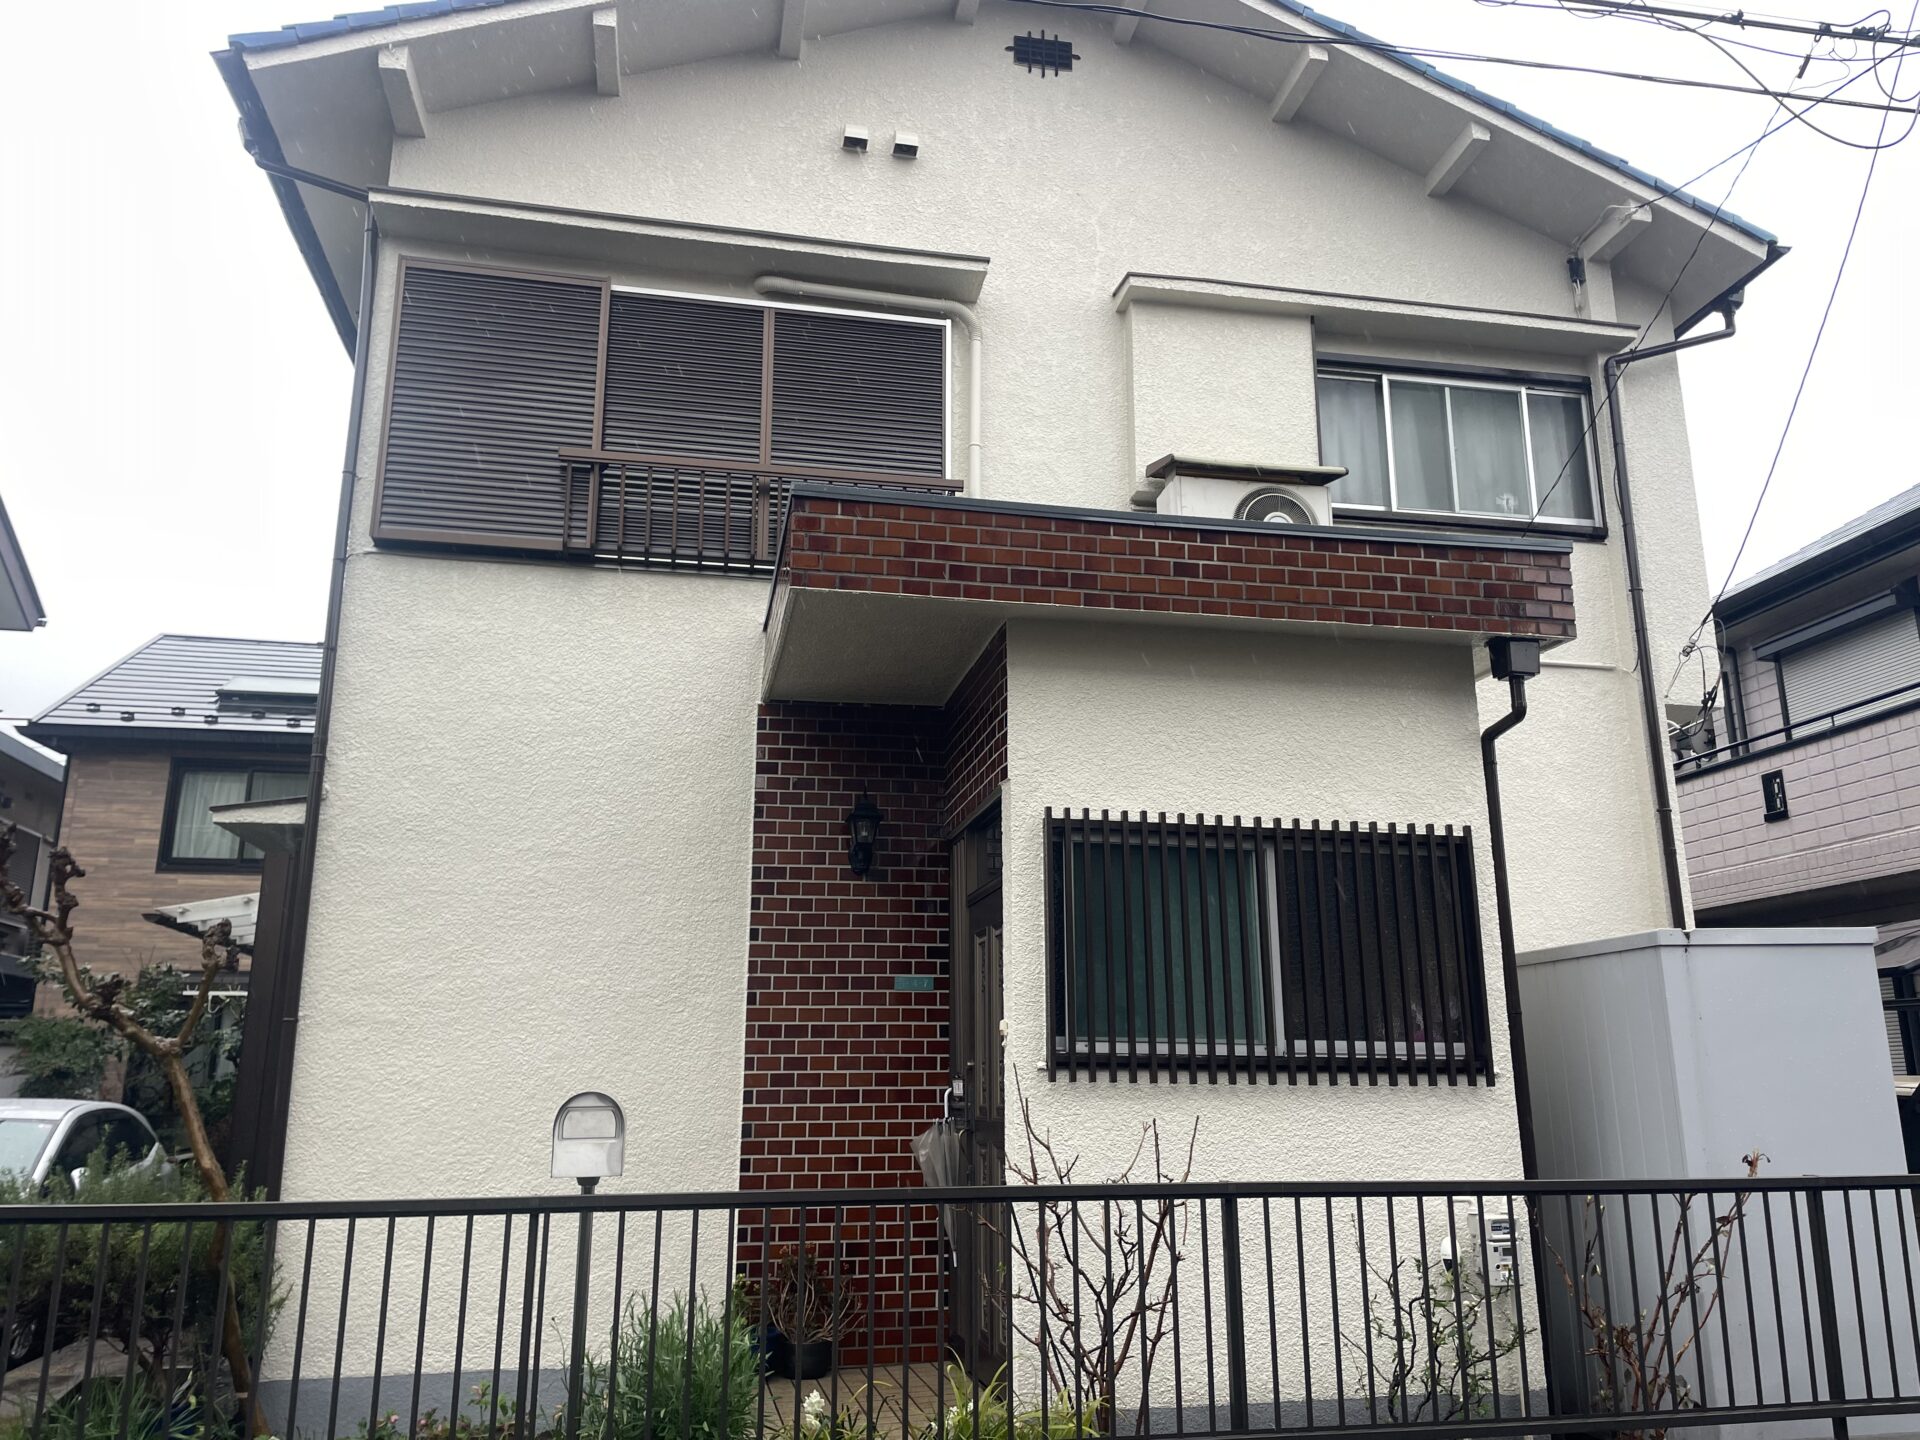 埼玉県狭山市で外壁をアイボリー色に塗り替えてトタン屋根をグレー、屋根漆喰も補修しました！　施工後